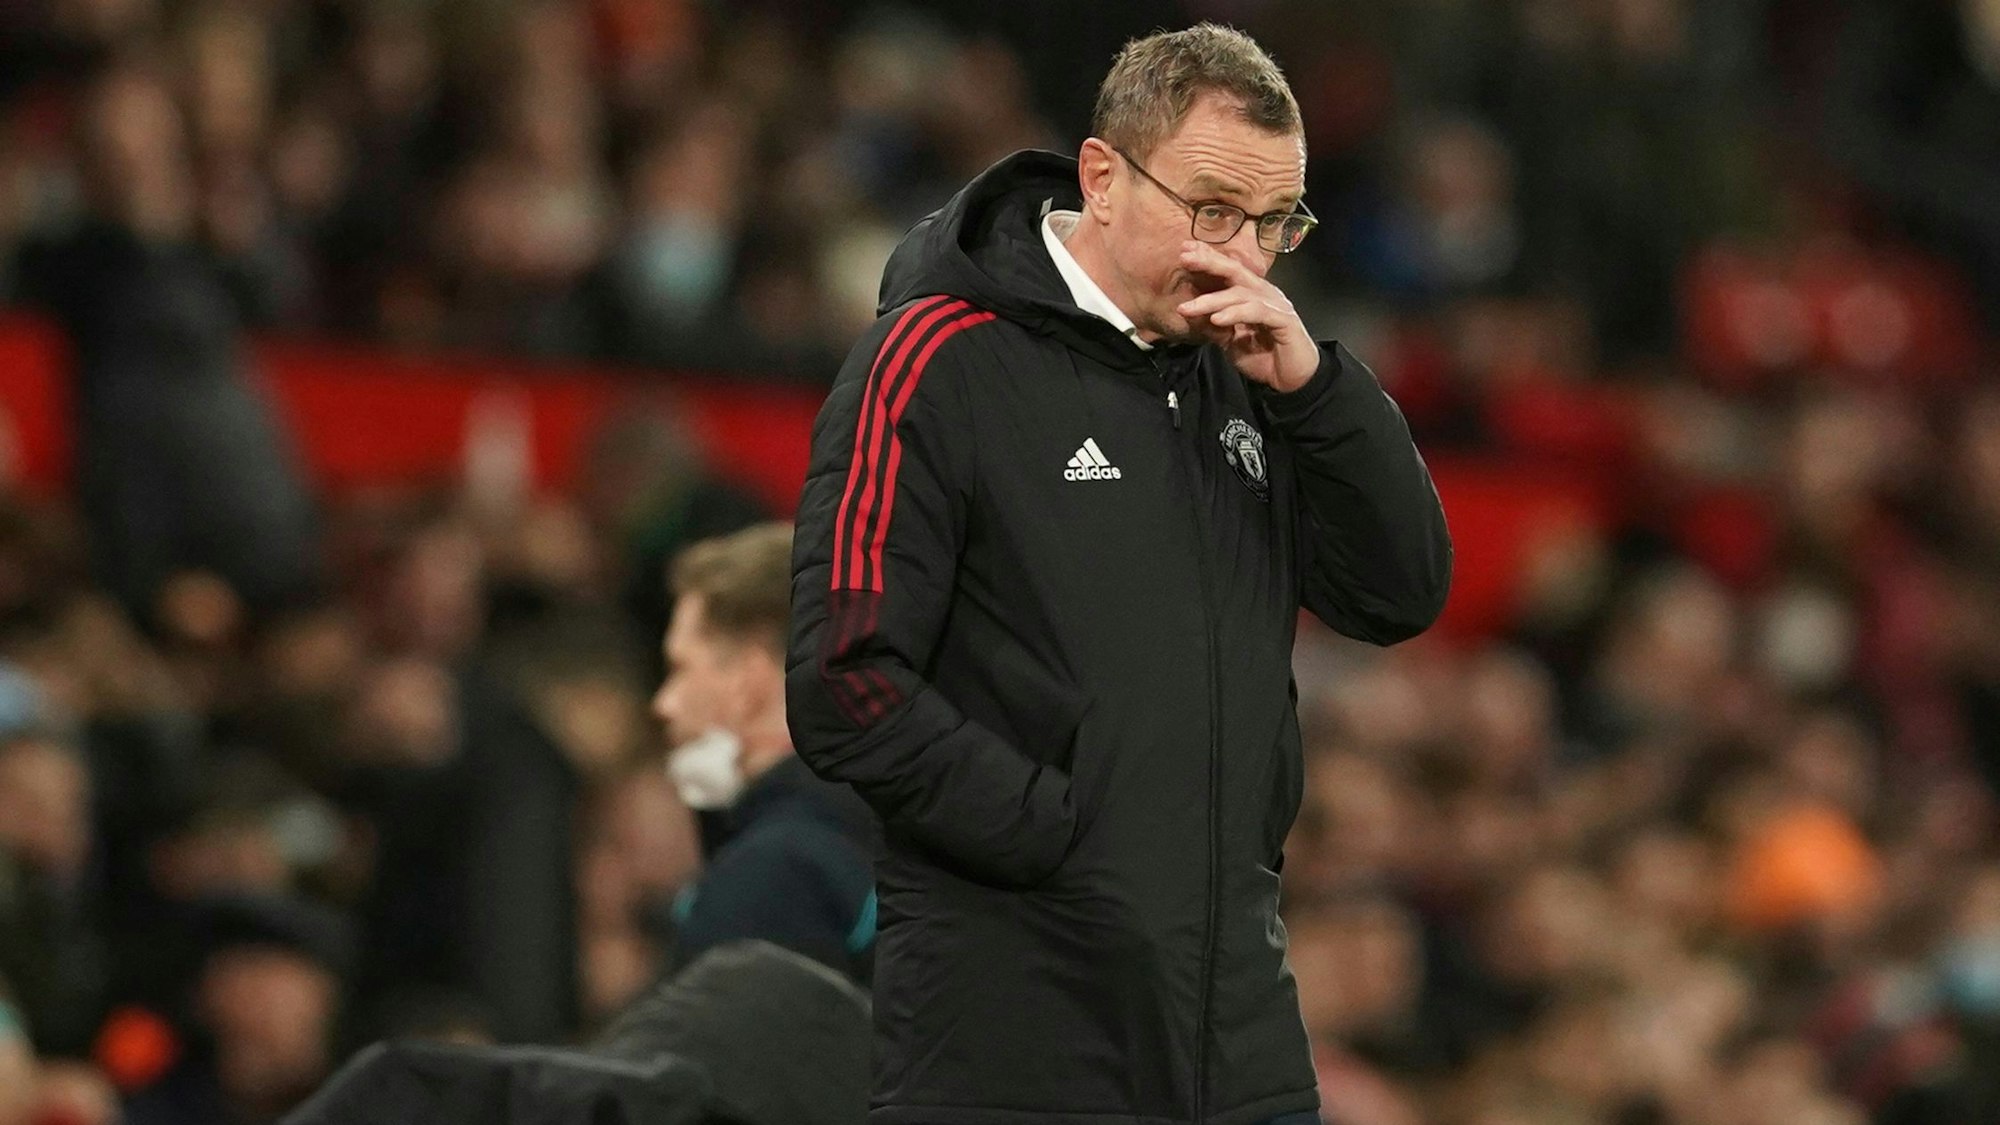 Ralf Rangnick, Trainer von Manchester United, reagiert am Spielfeldrand.